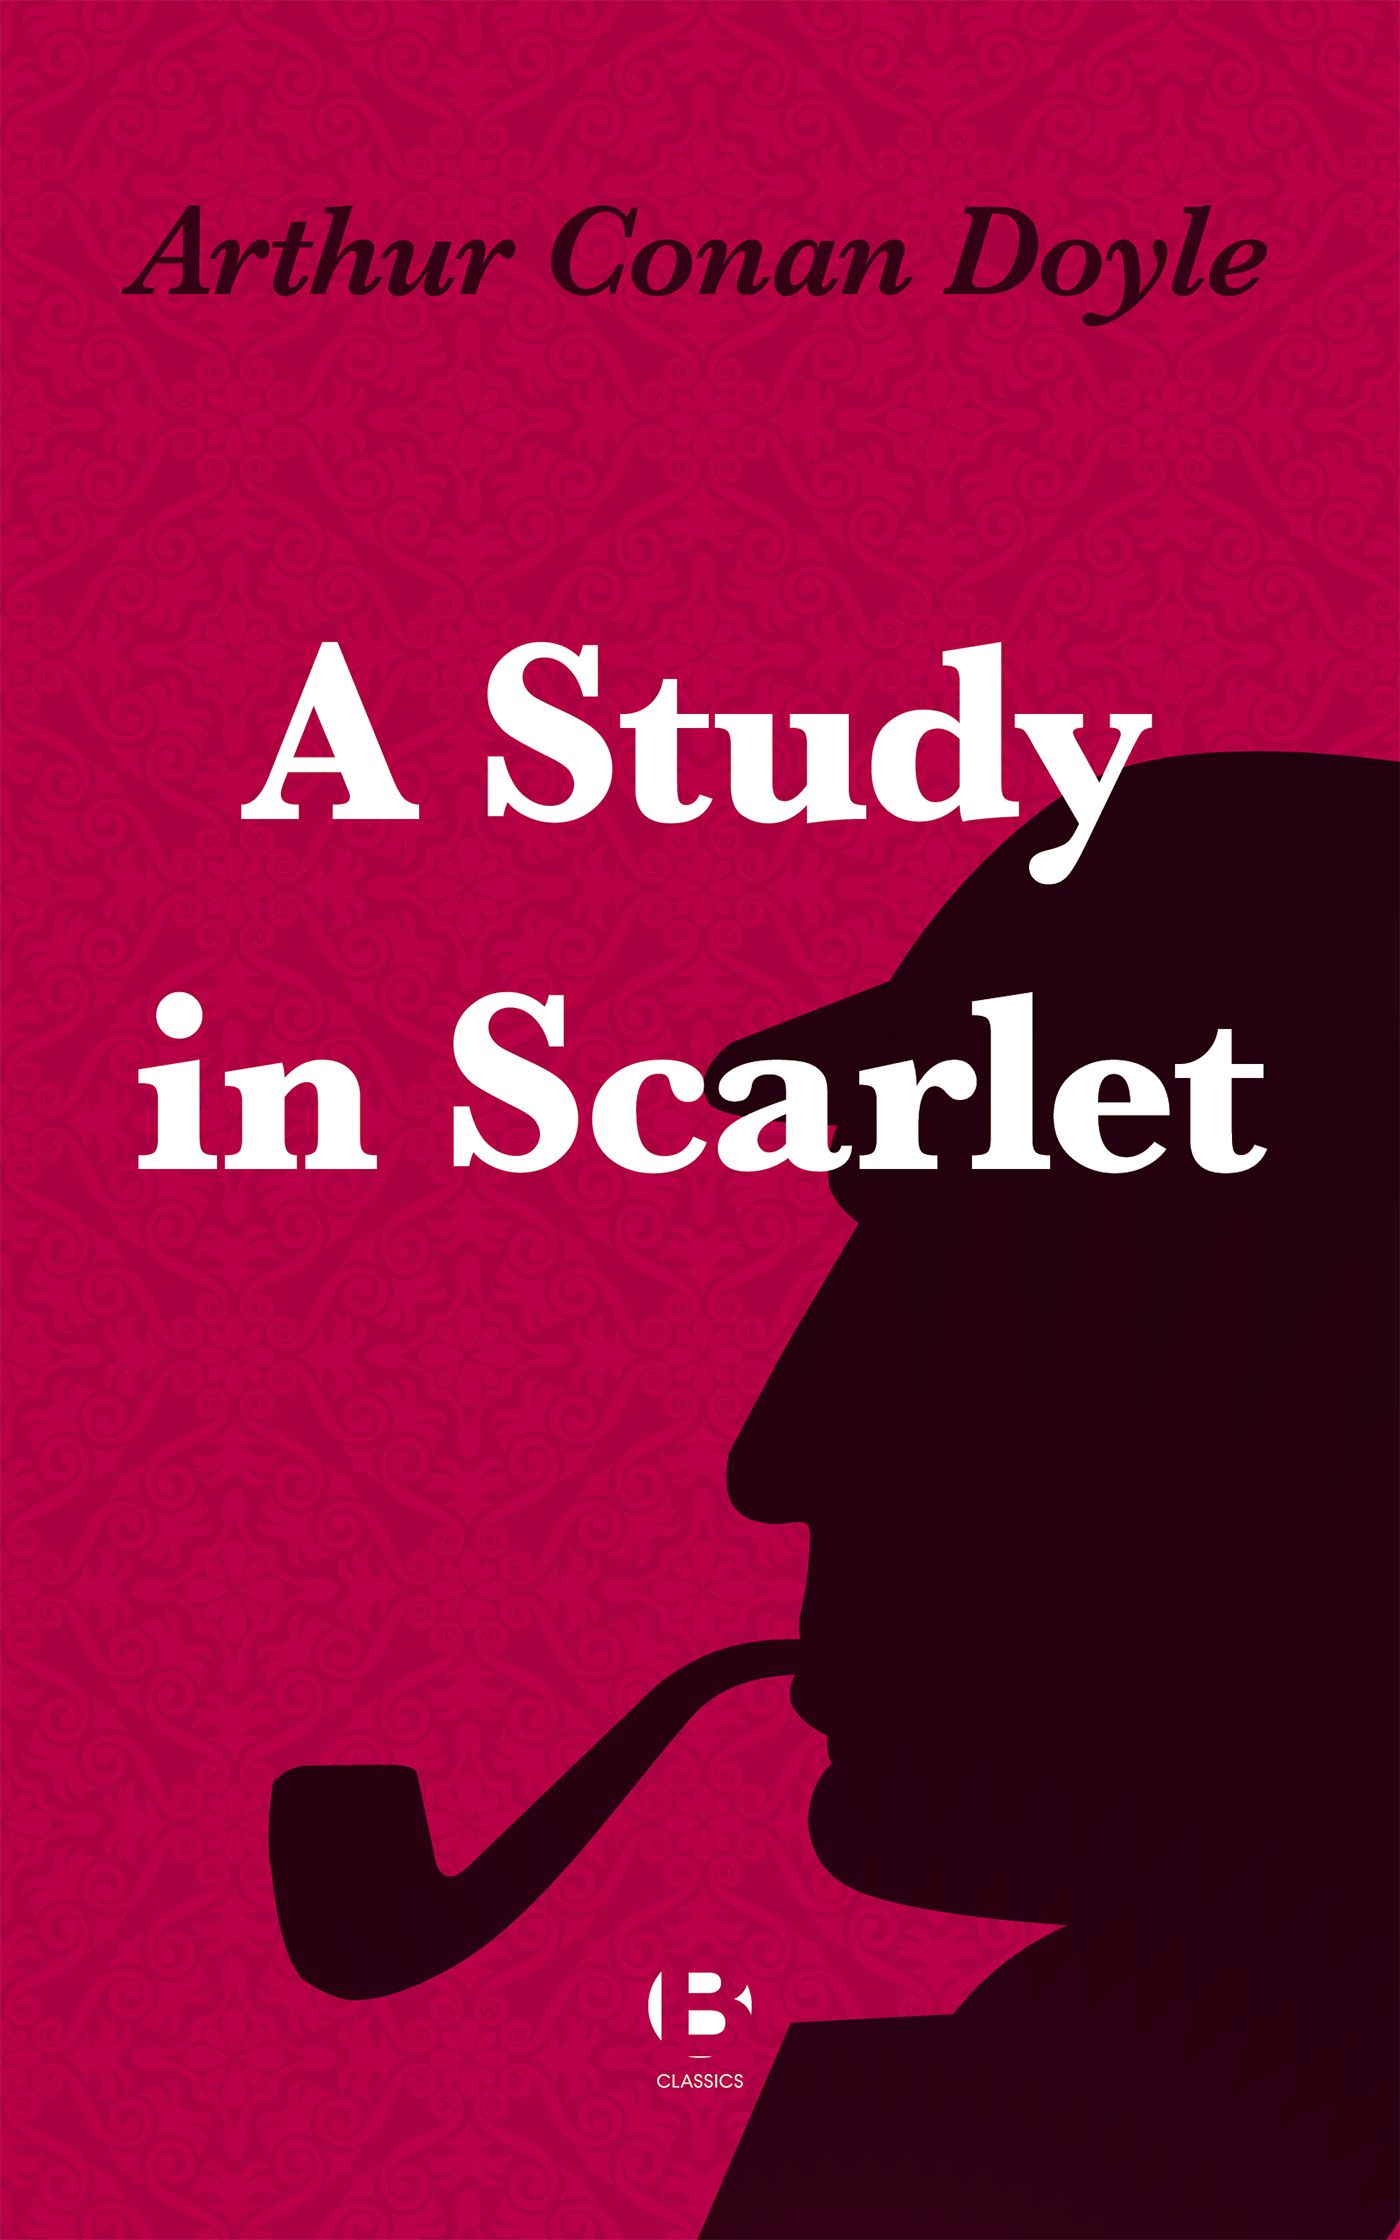 A Study in Scarlet, eBook by Arthur Conan Doyle